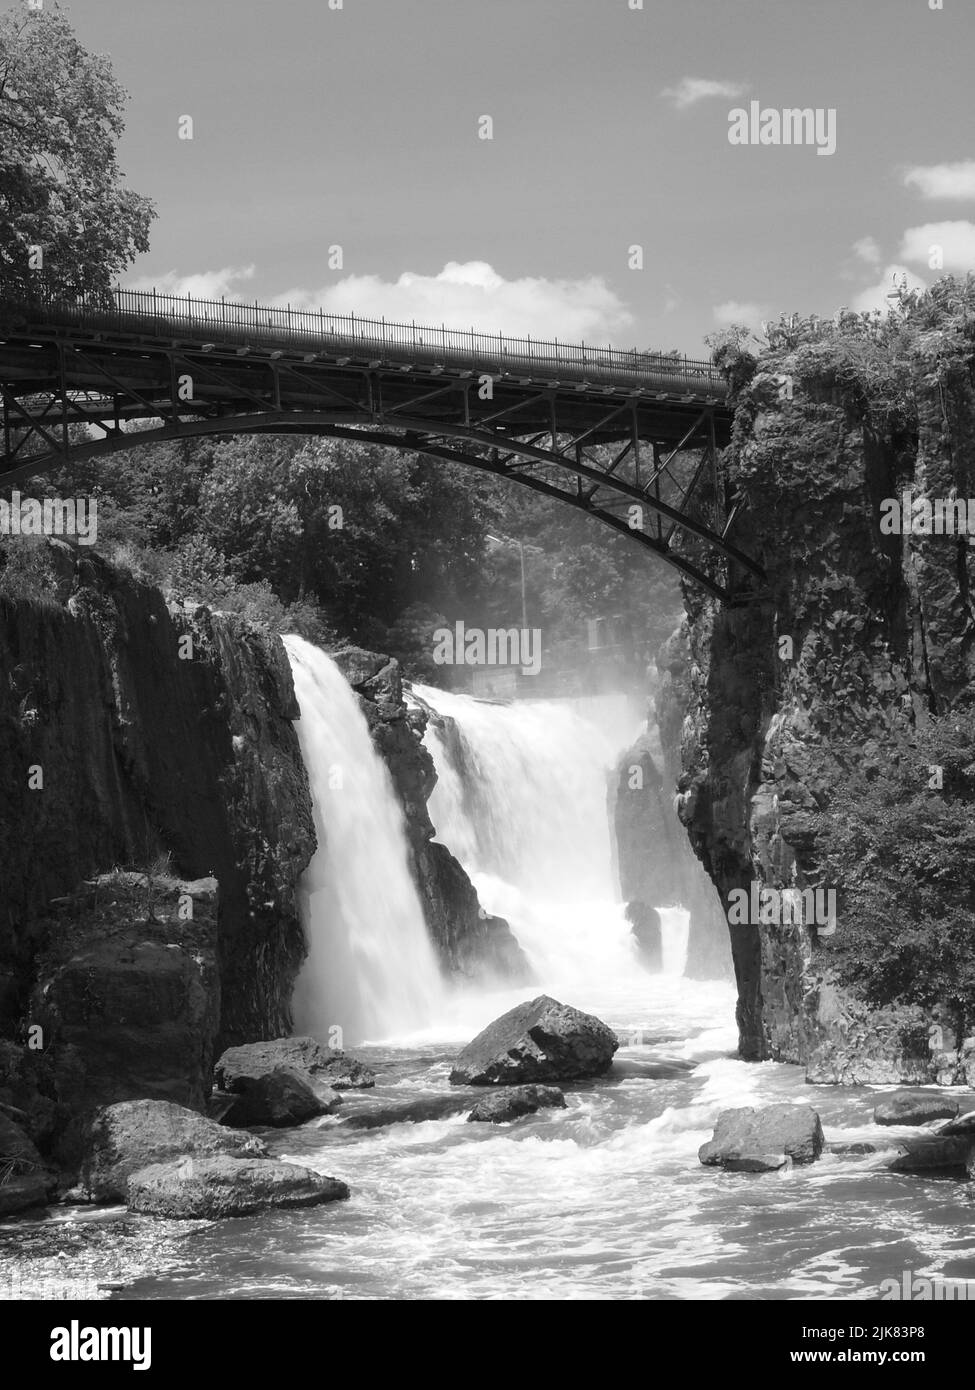 Image en noir et blanc des grandes chutes de Paterson, dans le New Jersey, le long de la rivière Passaic. Fait maintenant partie d'un parc national historique. Banque D'Images